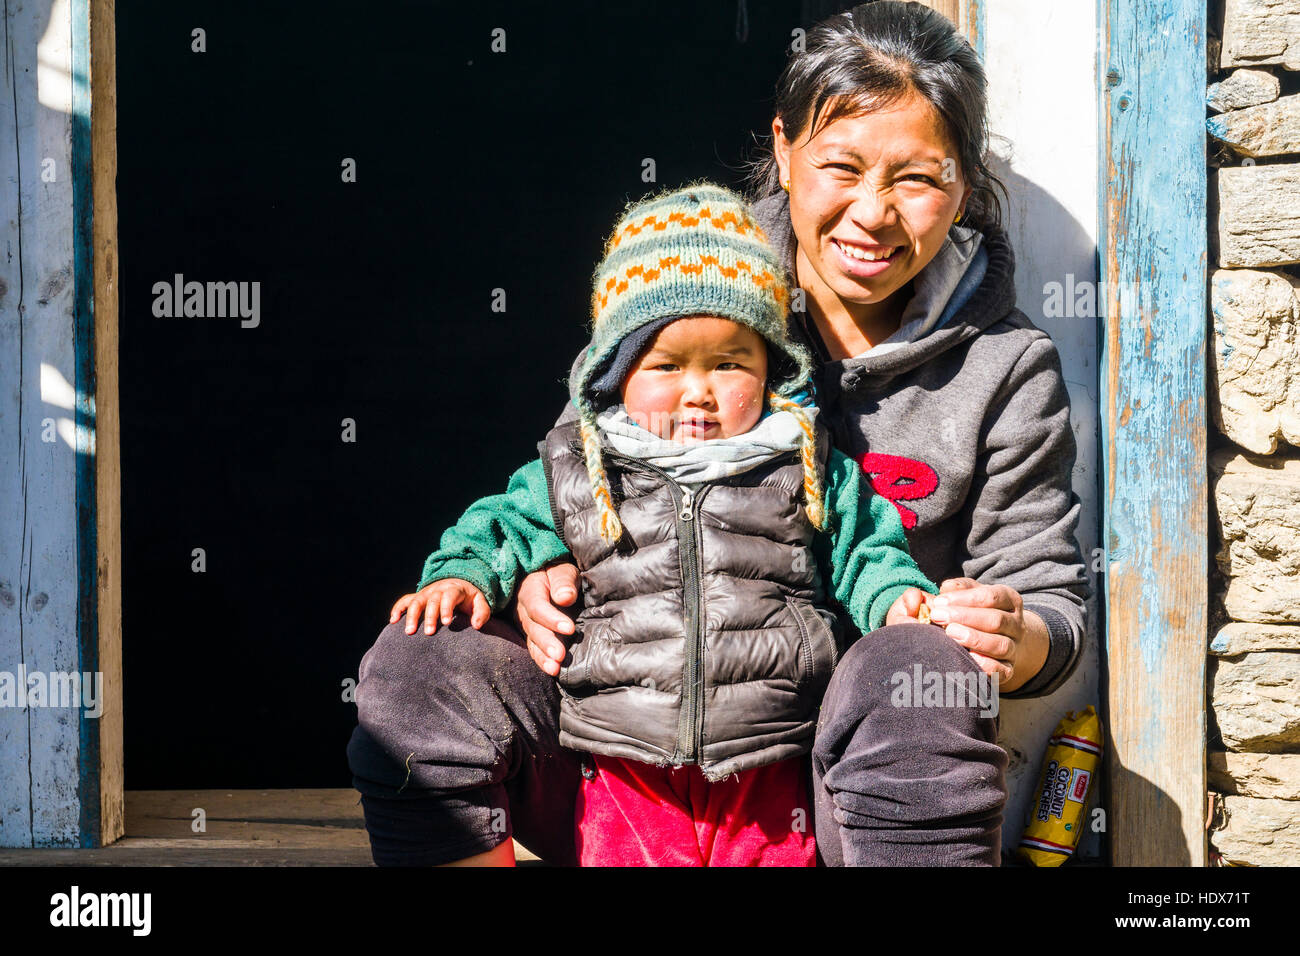 Portraits d'une jeune mère avec son enfant népalais, assis dans une porte Banque D'Images